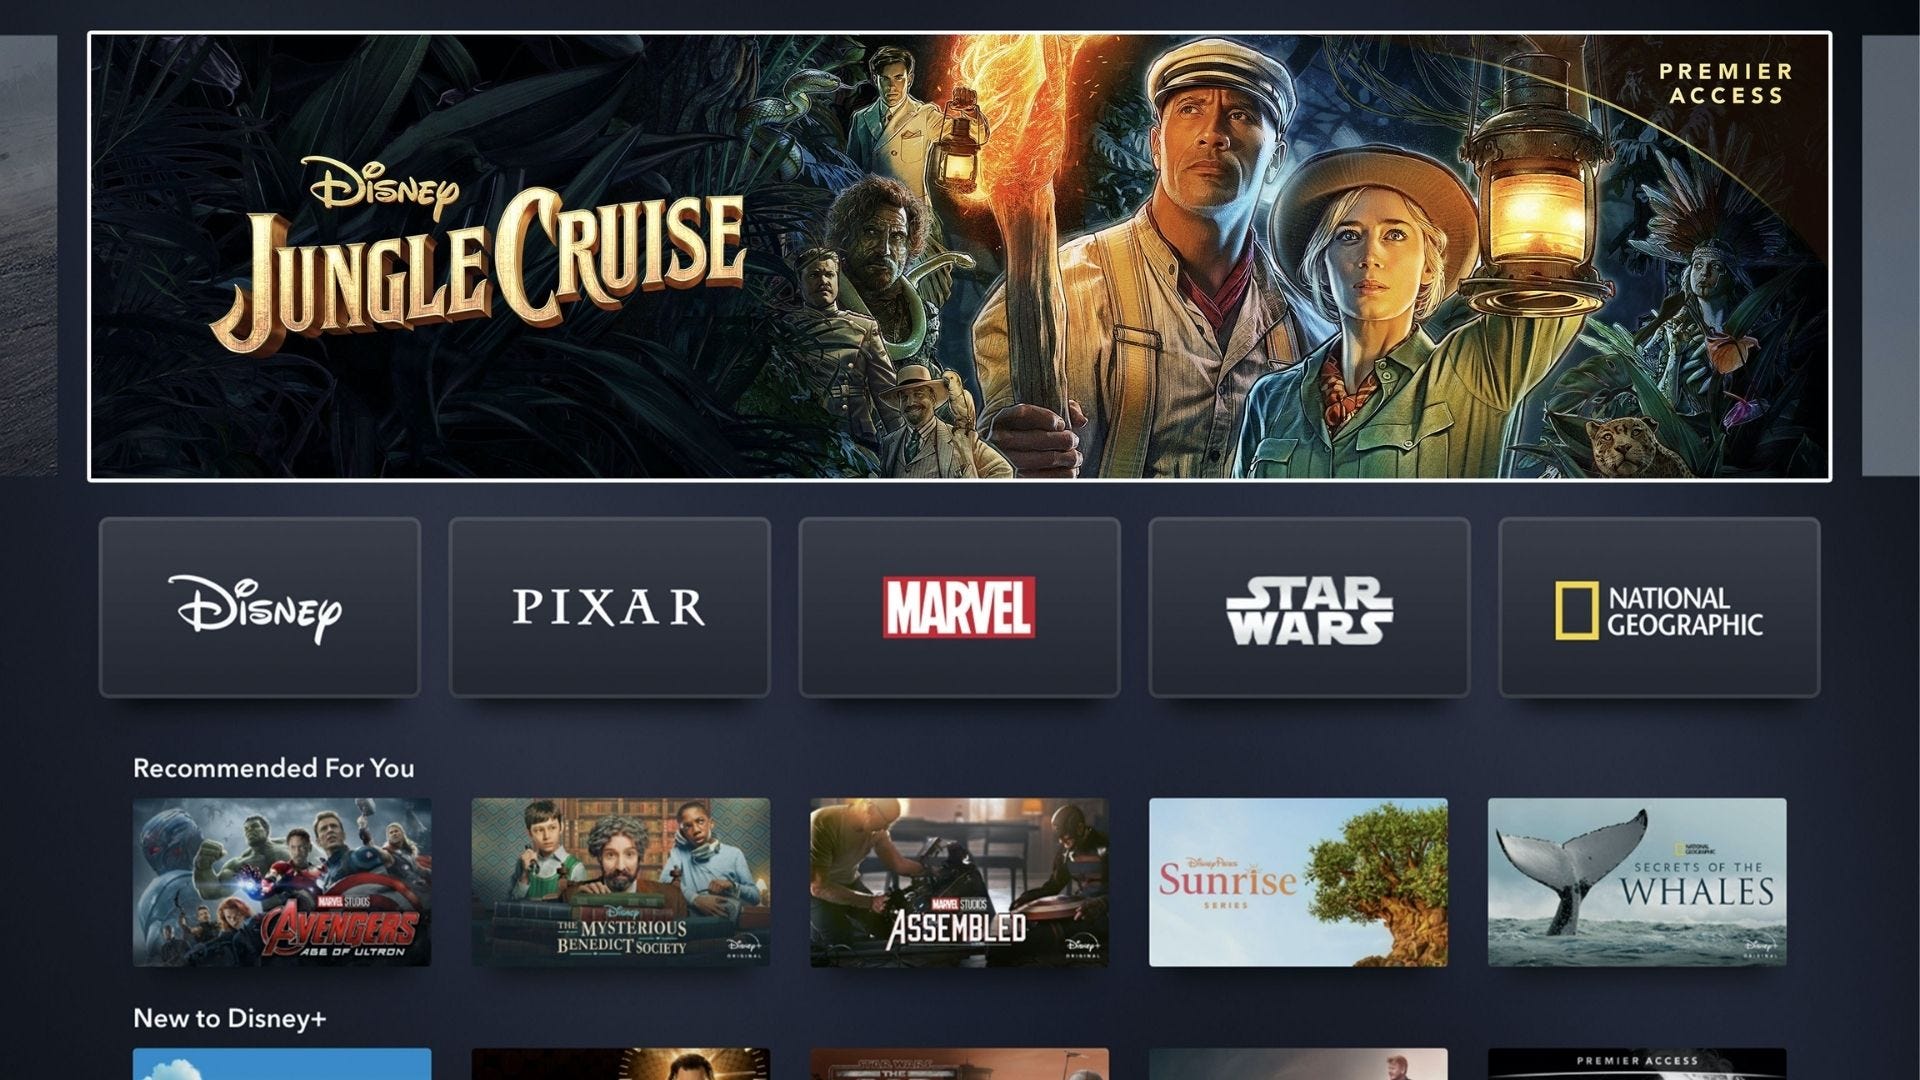 écran d'accueil de disney plus, affichant le film jungle cruise en haut de page